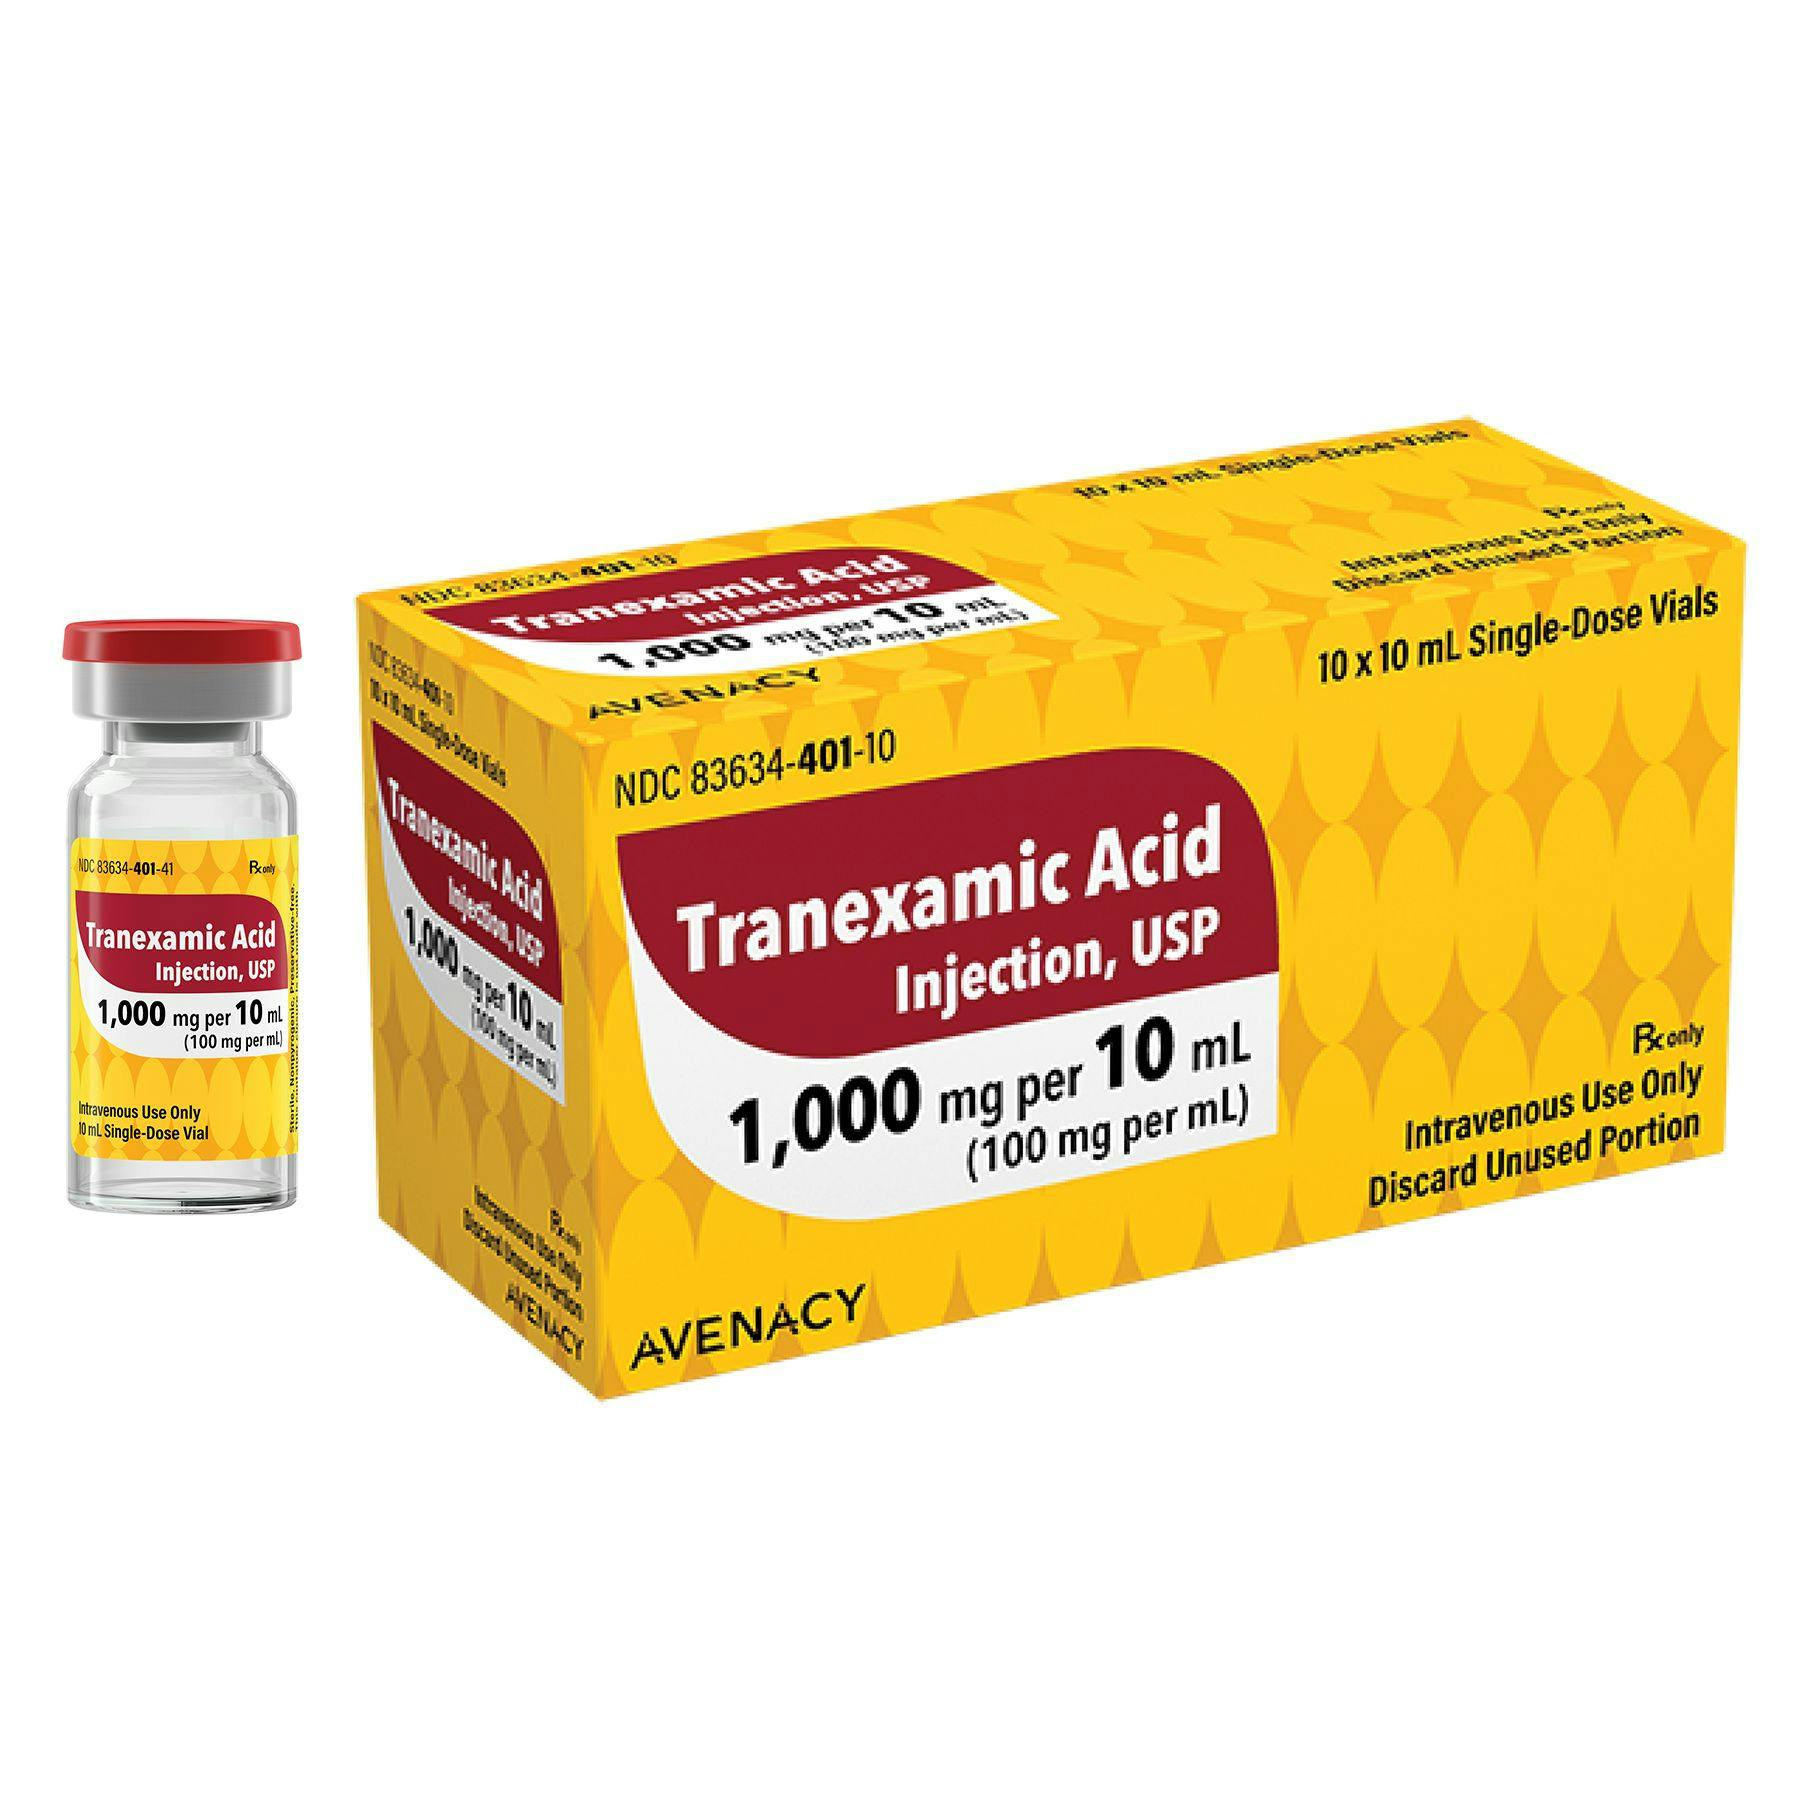 Tranexamic Acid Injection, USP | Image Credit: © Avenacy